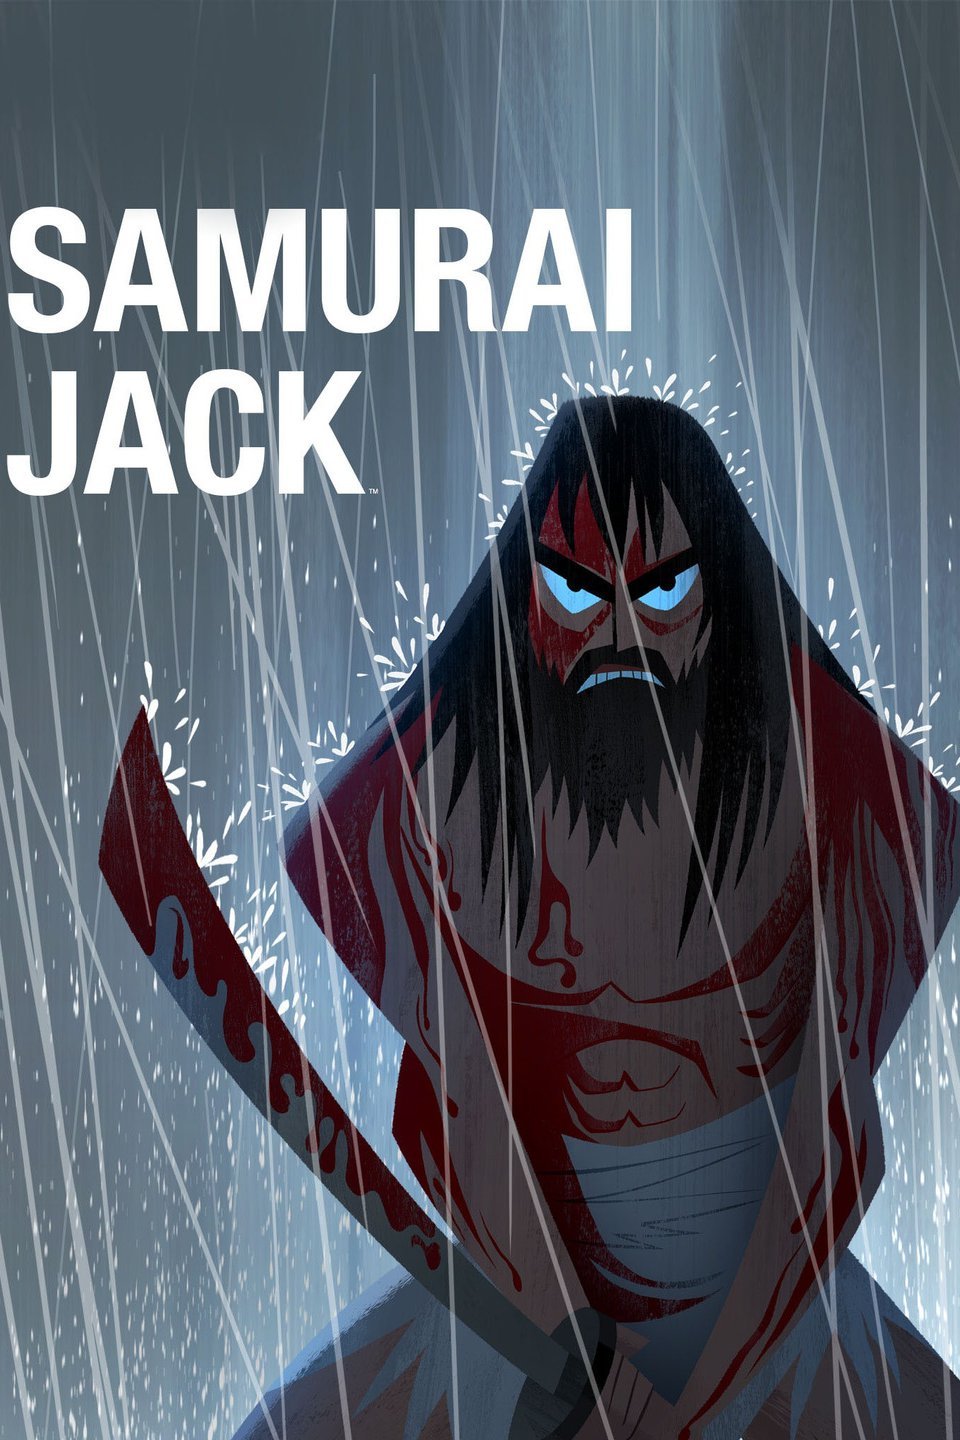 Rhythmus Wahrscheinlichkeit Bauernfänger Samurai Jack Season 5 Episode 7 Stream Falsch